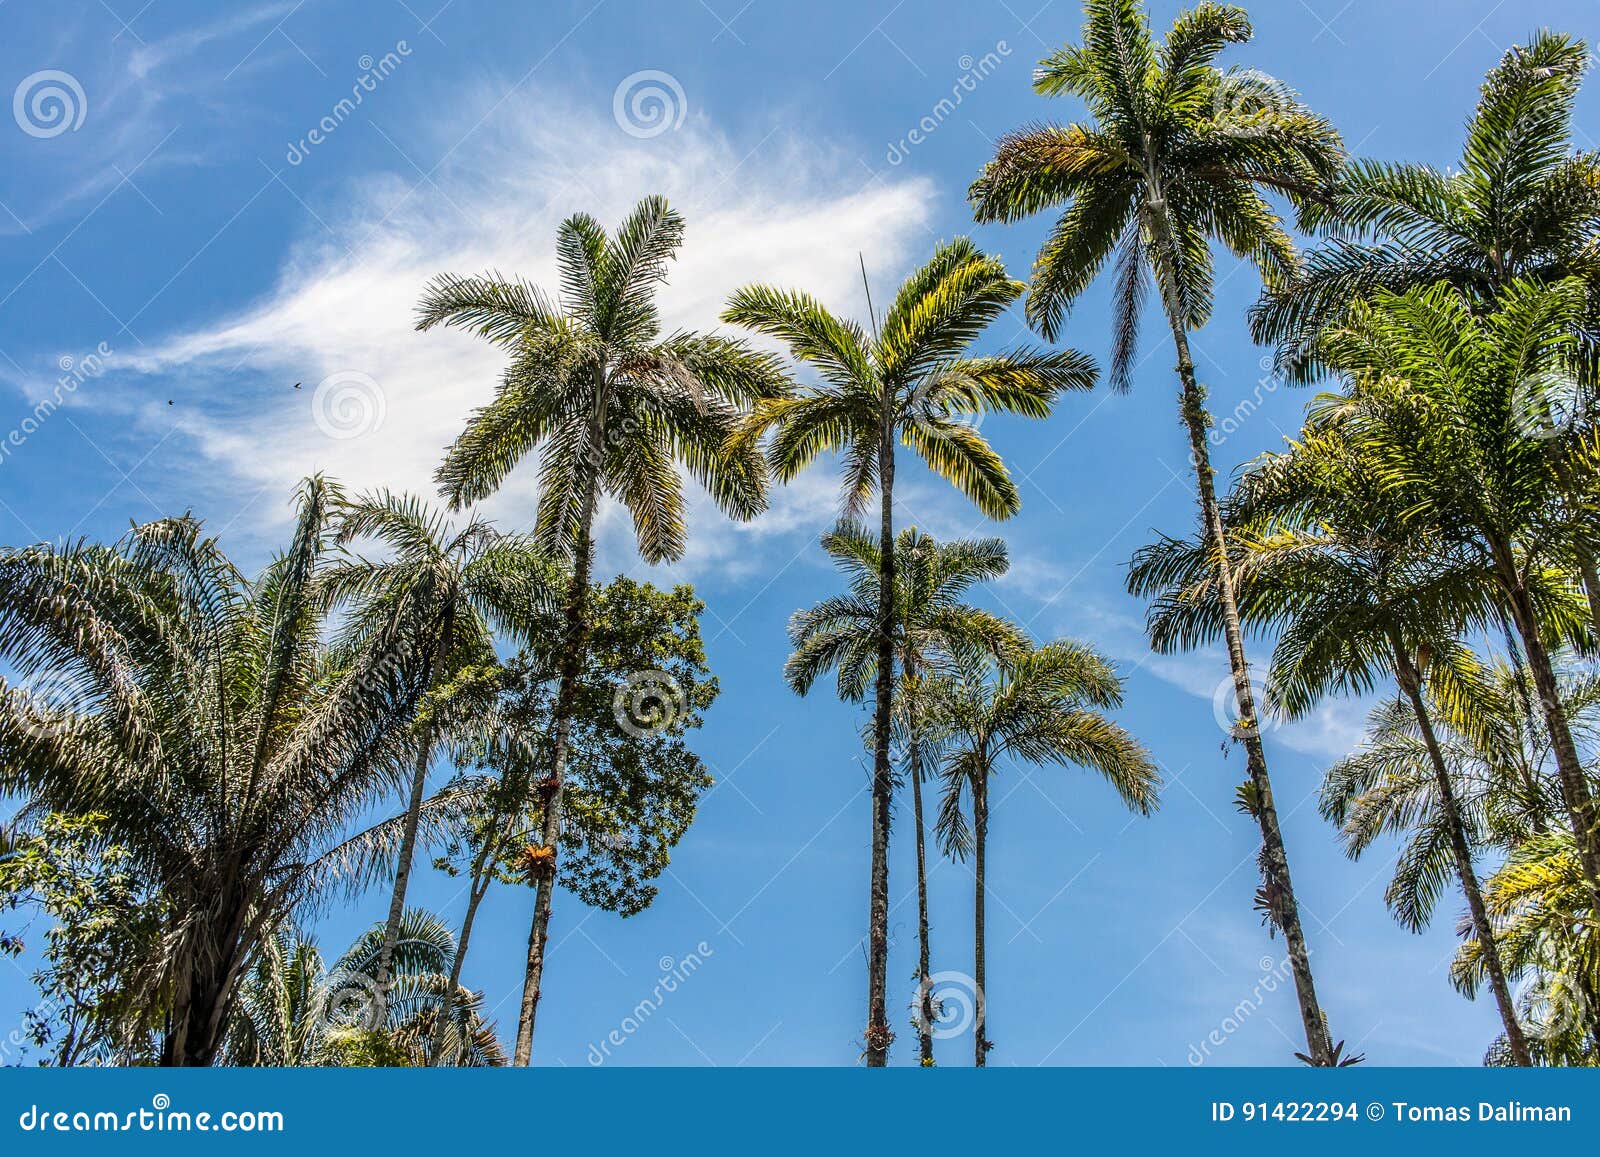 ubatuba beach palms